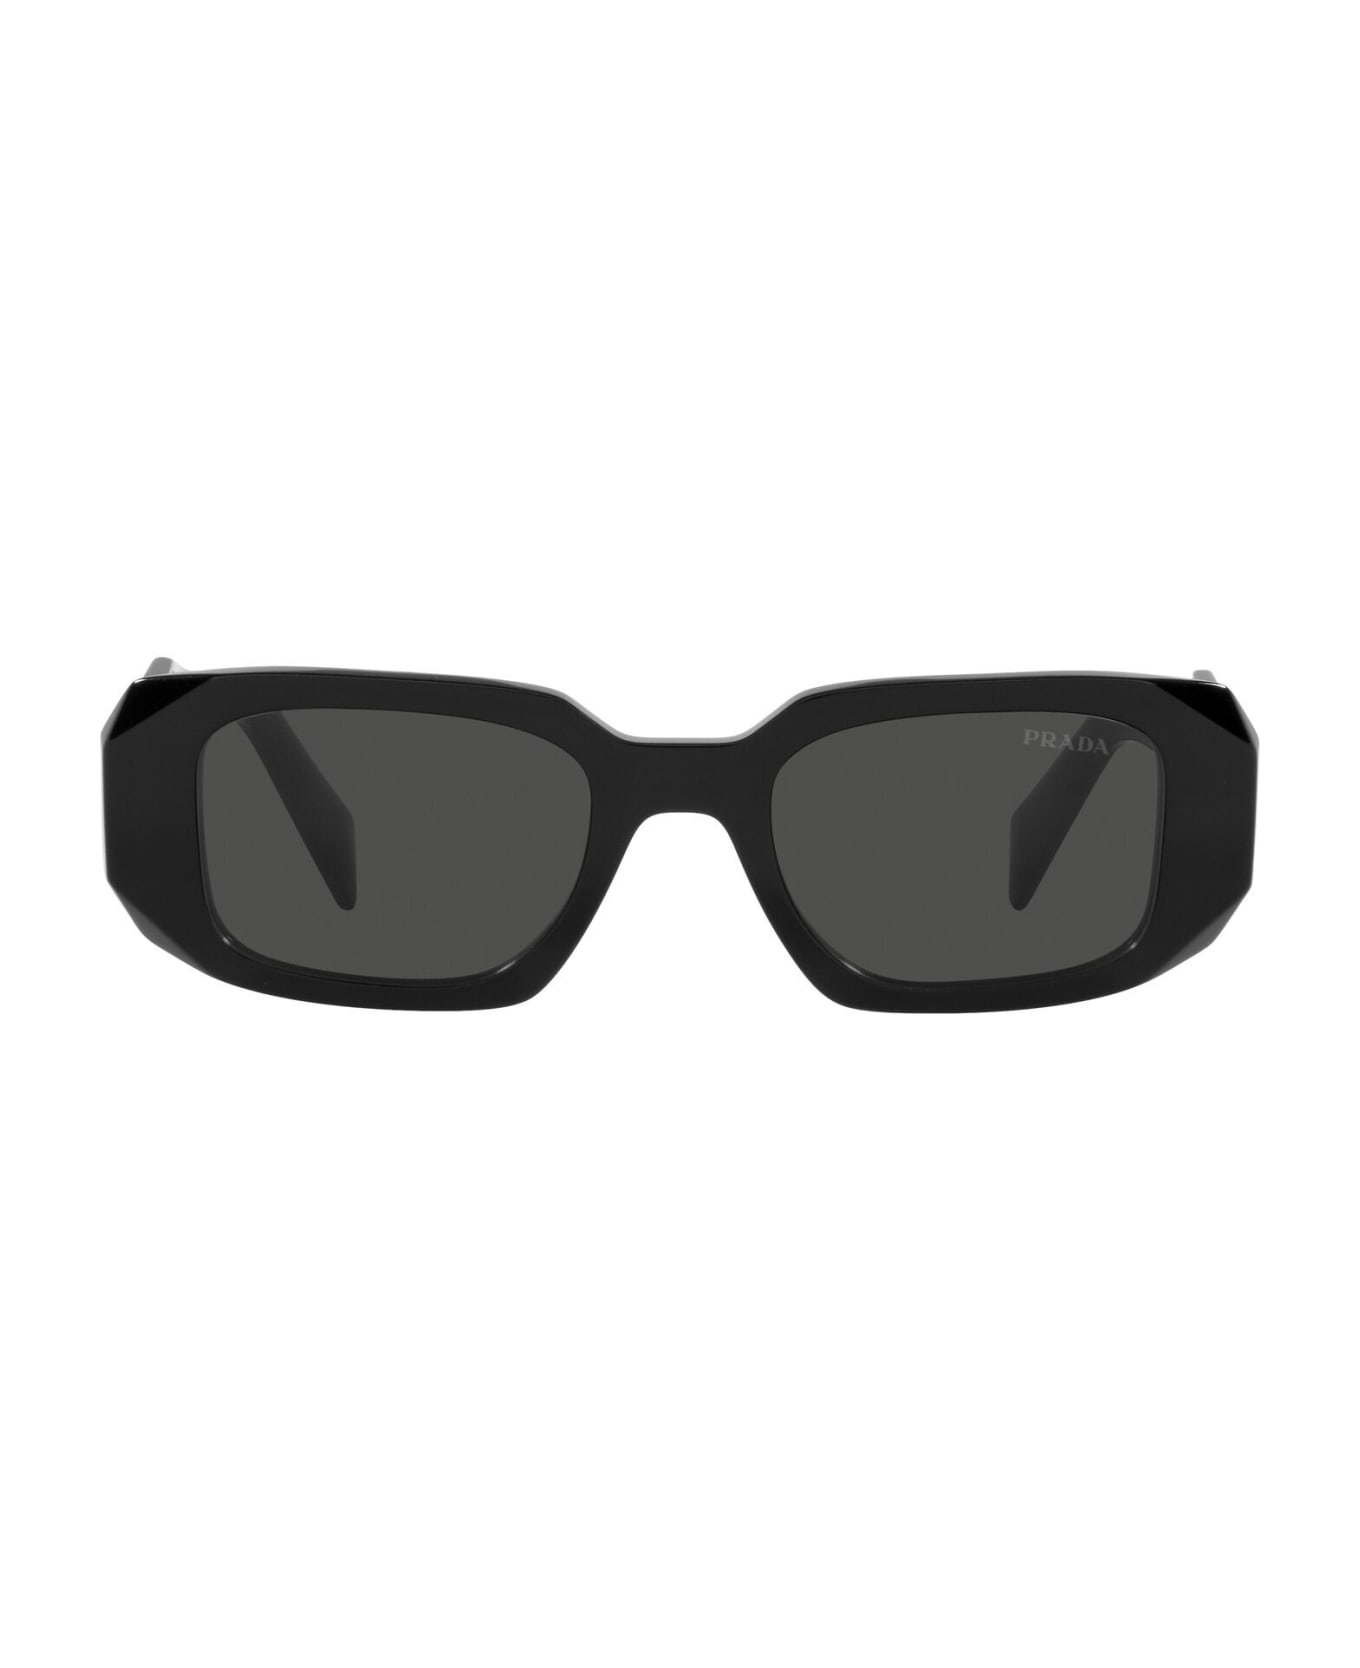 Prada Eyewear Eyewear - Nero/Nero